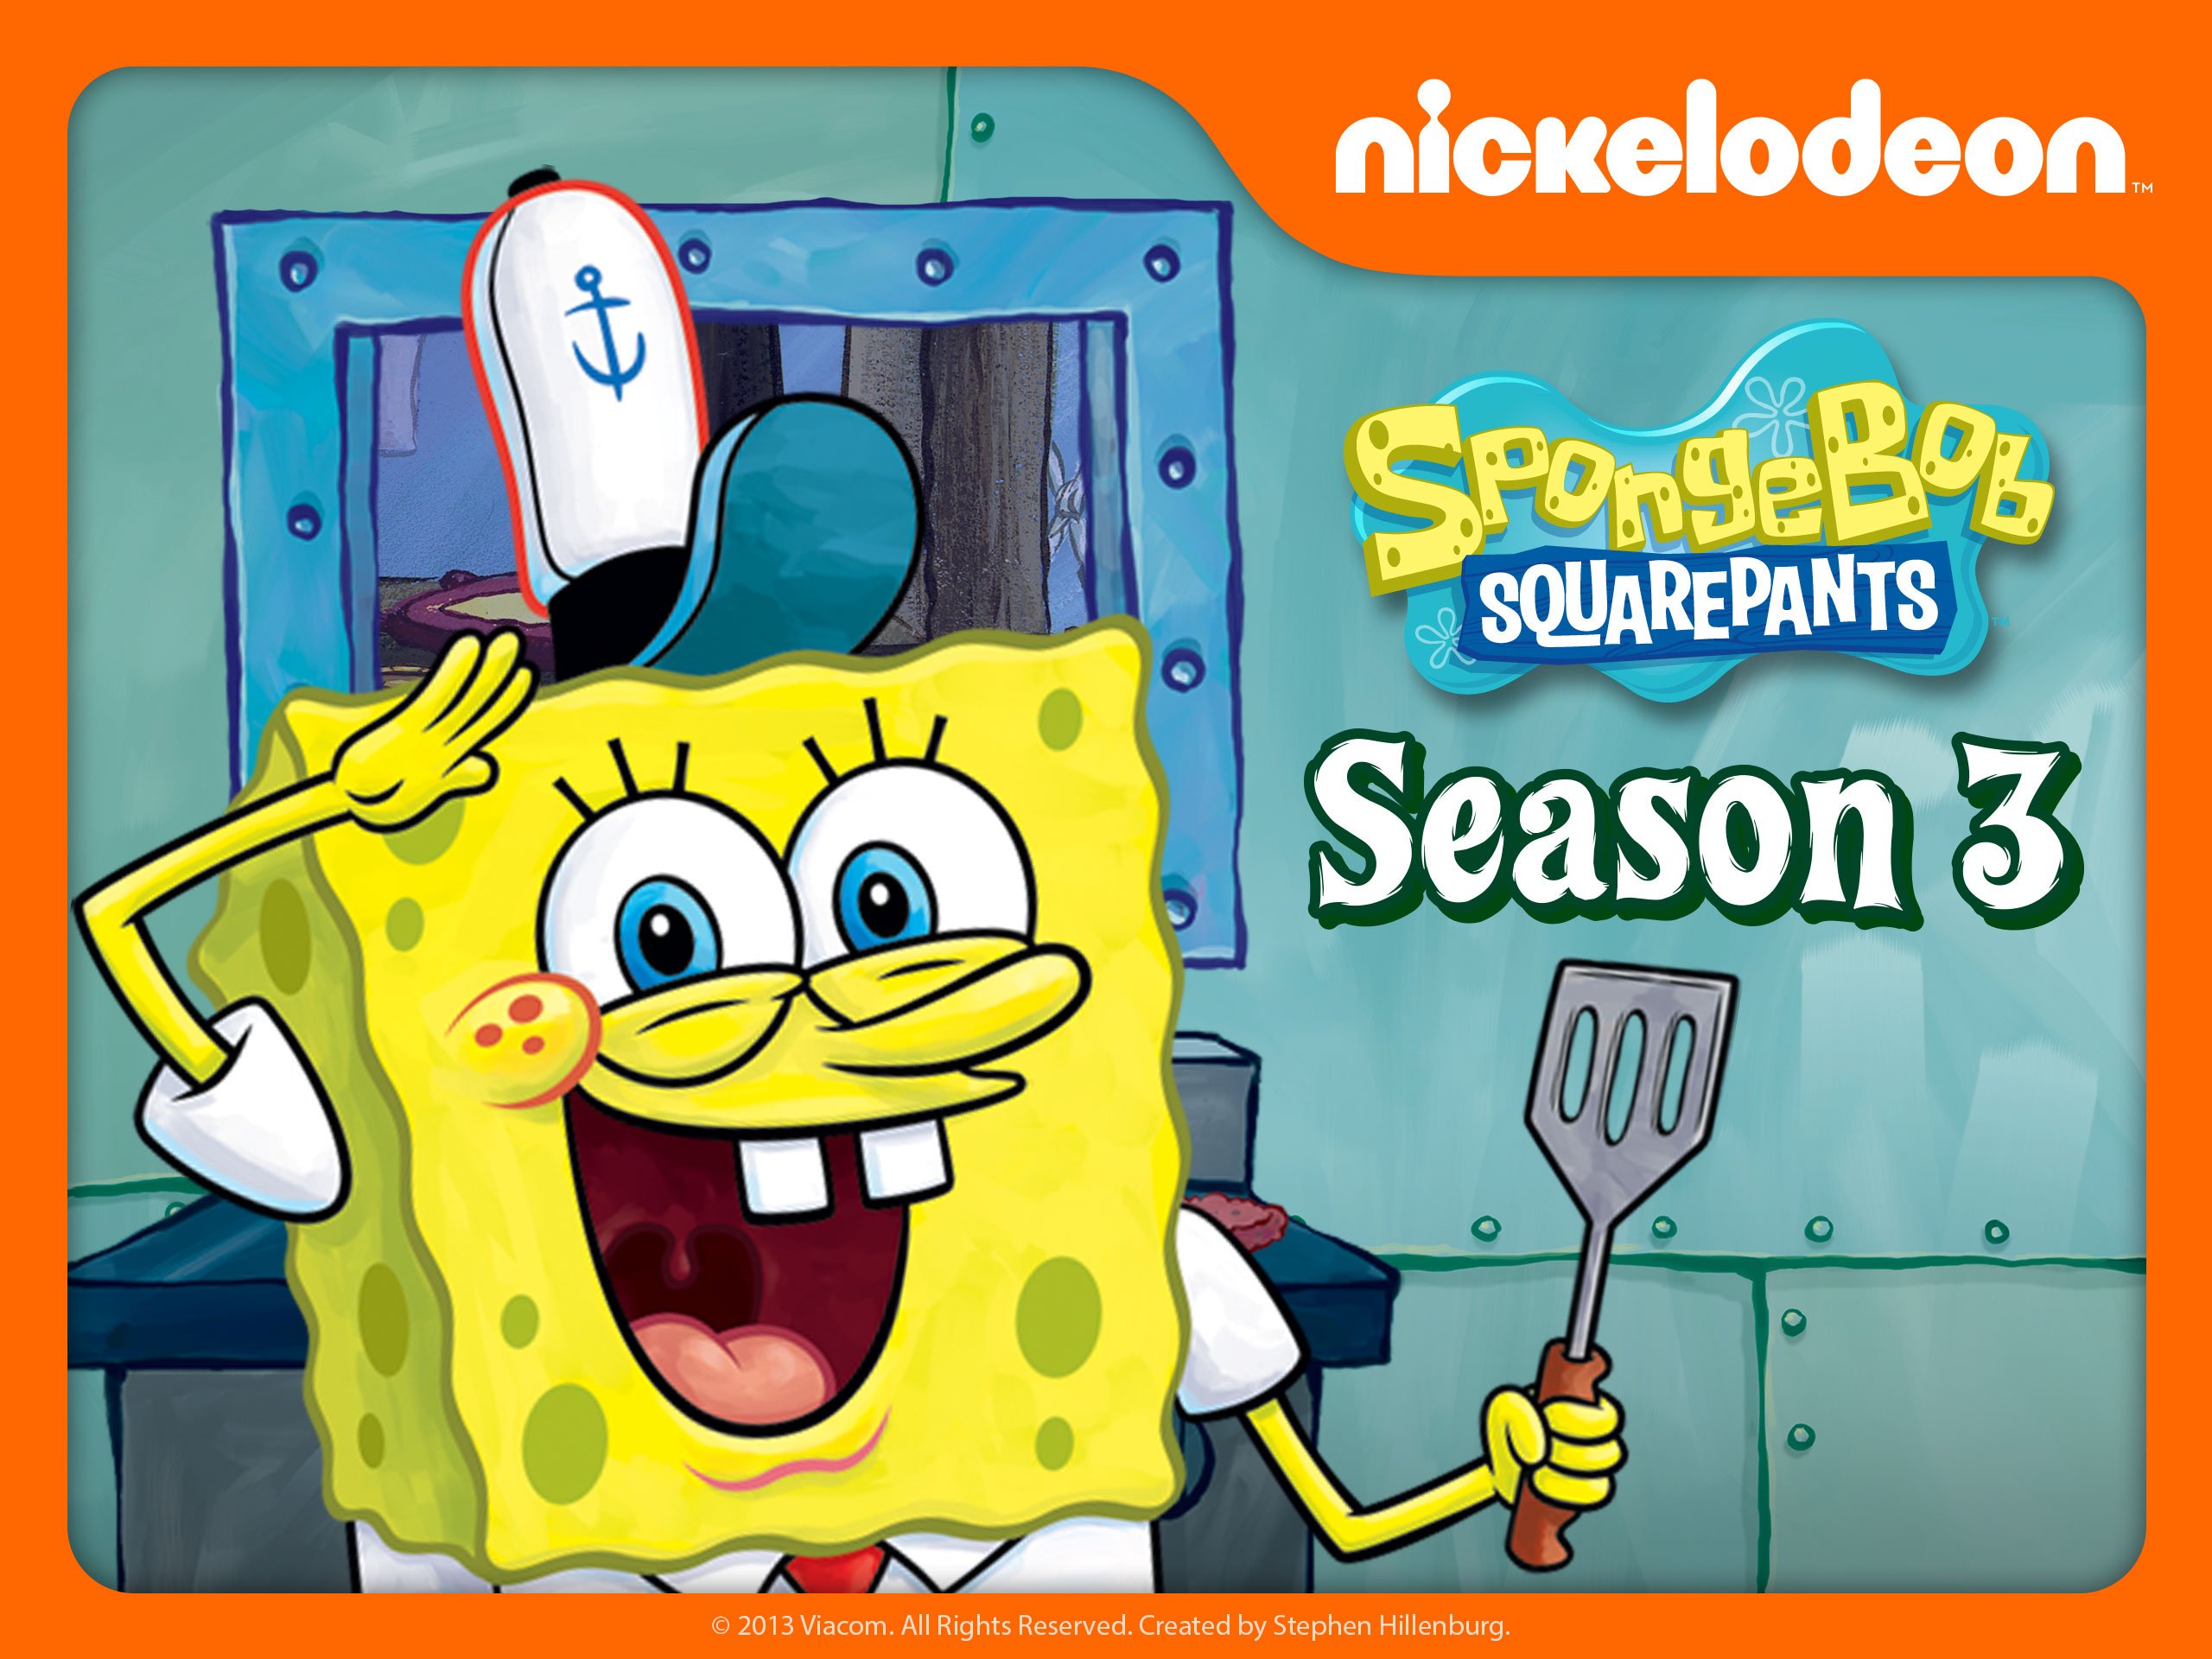 spongebob season 3 full episodes online